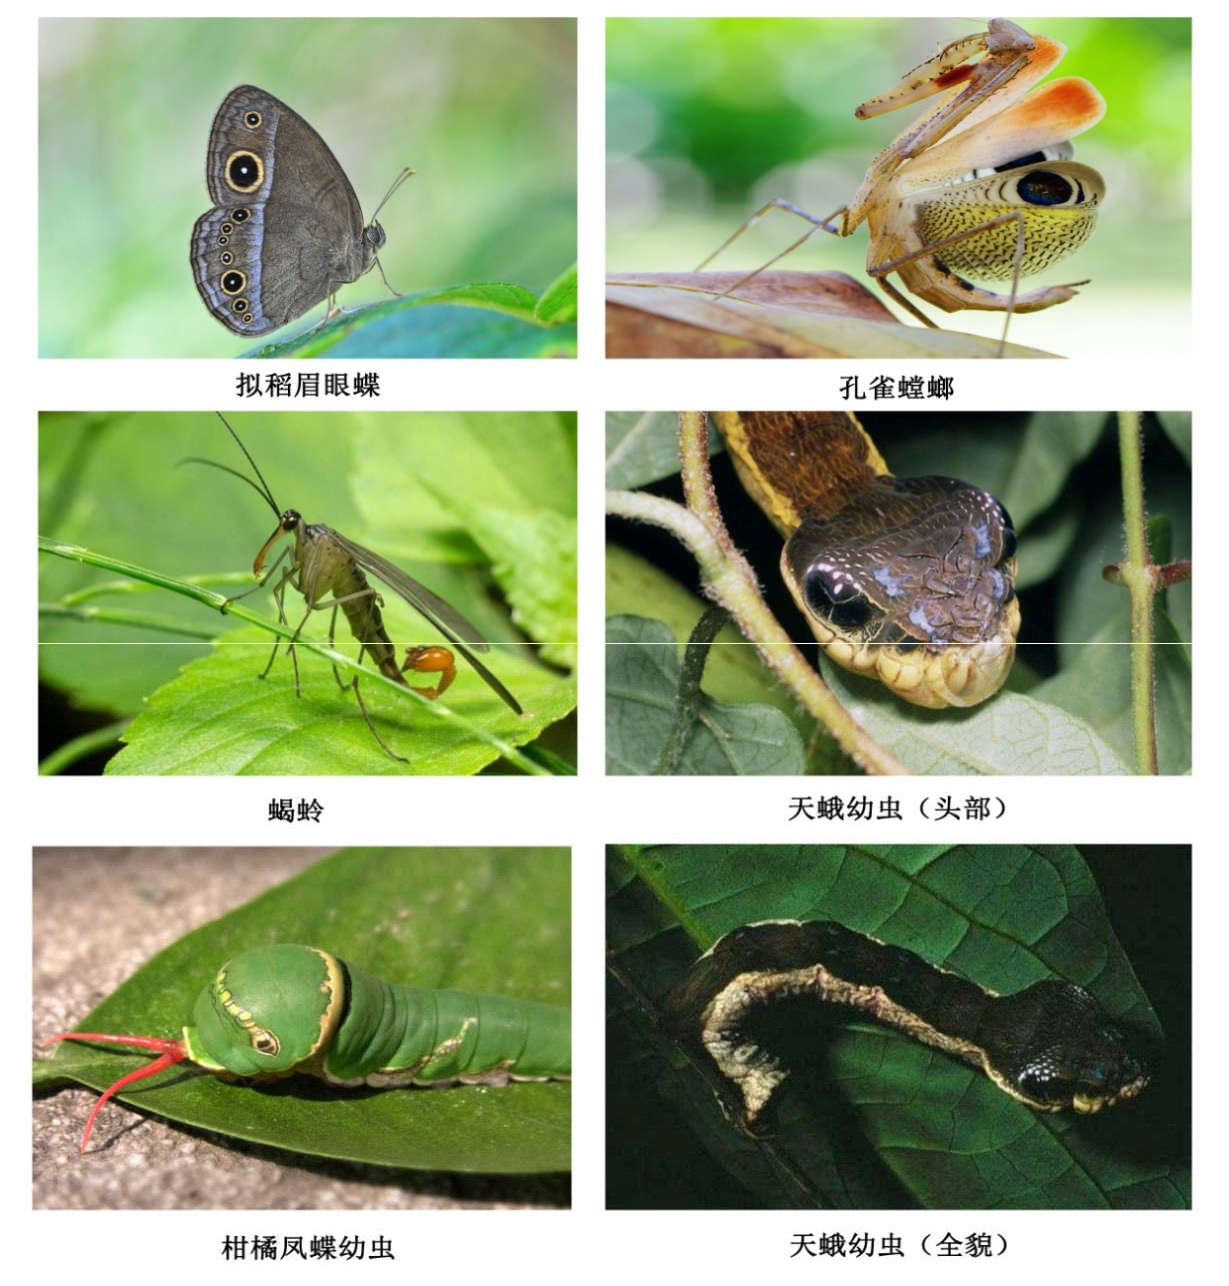 昆虫学小入门——常见昆虫形态解剖、系统分类及昆虫生态的简单概括（二） - 知乎